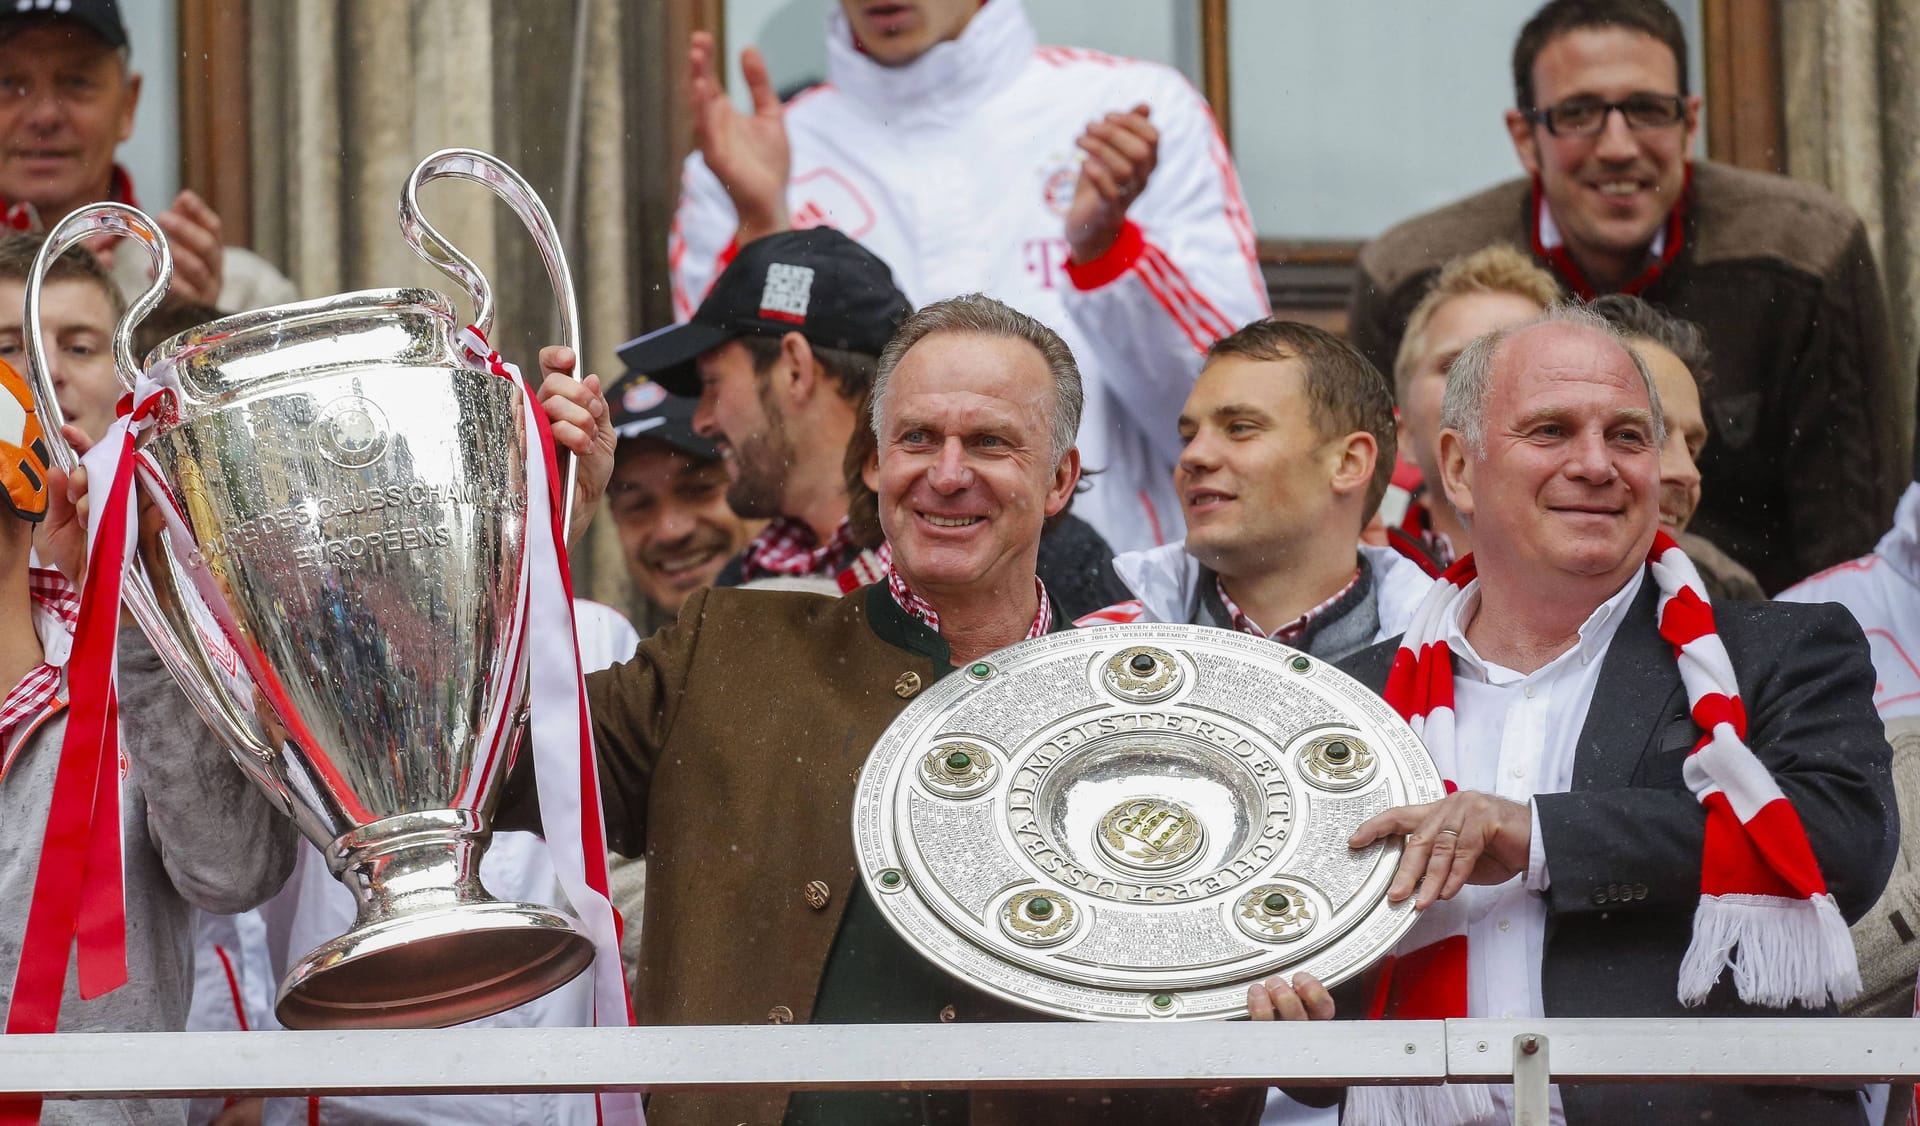 Unter der Führung von Rummenigge und Hoeneß baut der FC Bayern seine Vormachtstellung im deutschen Fußball noch aus. 2013 holt die Mannschaft das Triple.